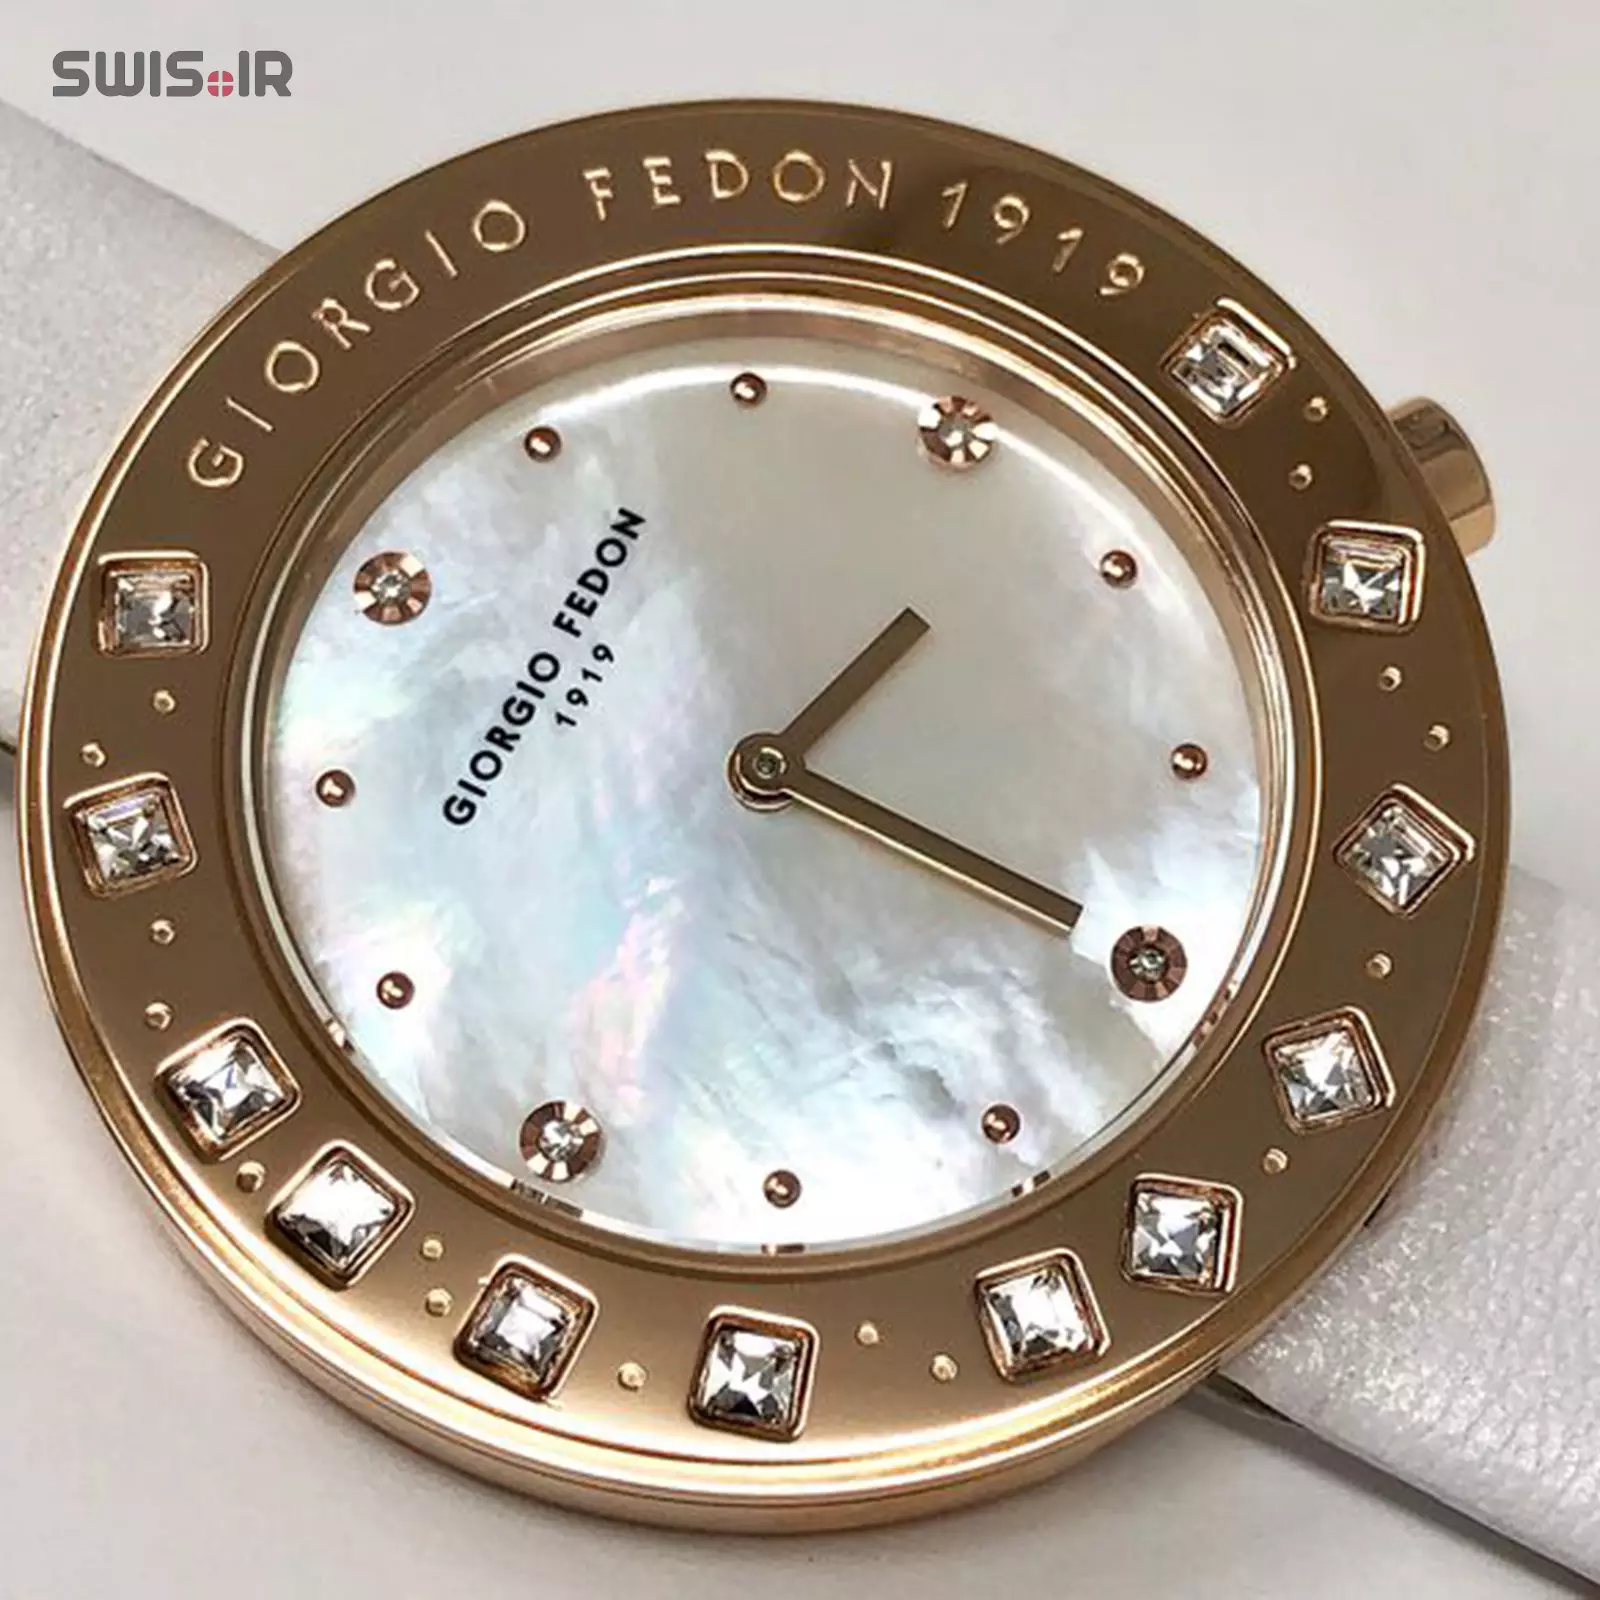 ساعت مچی زنانه برند جورجیو فدون ایتالیا مدل GFAZ004